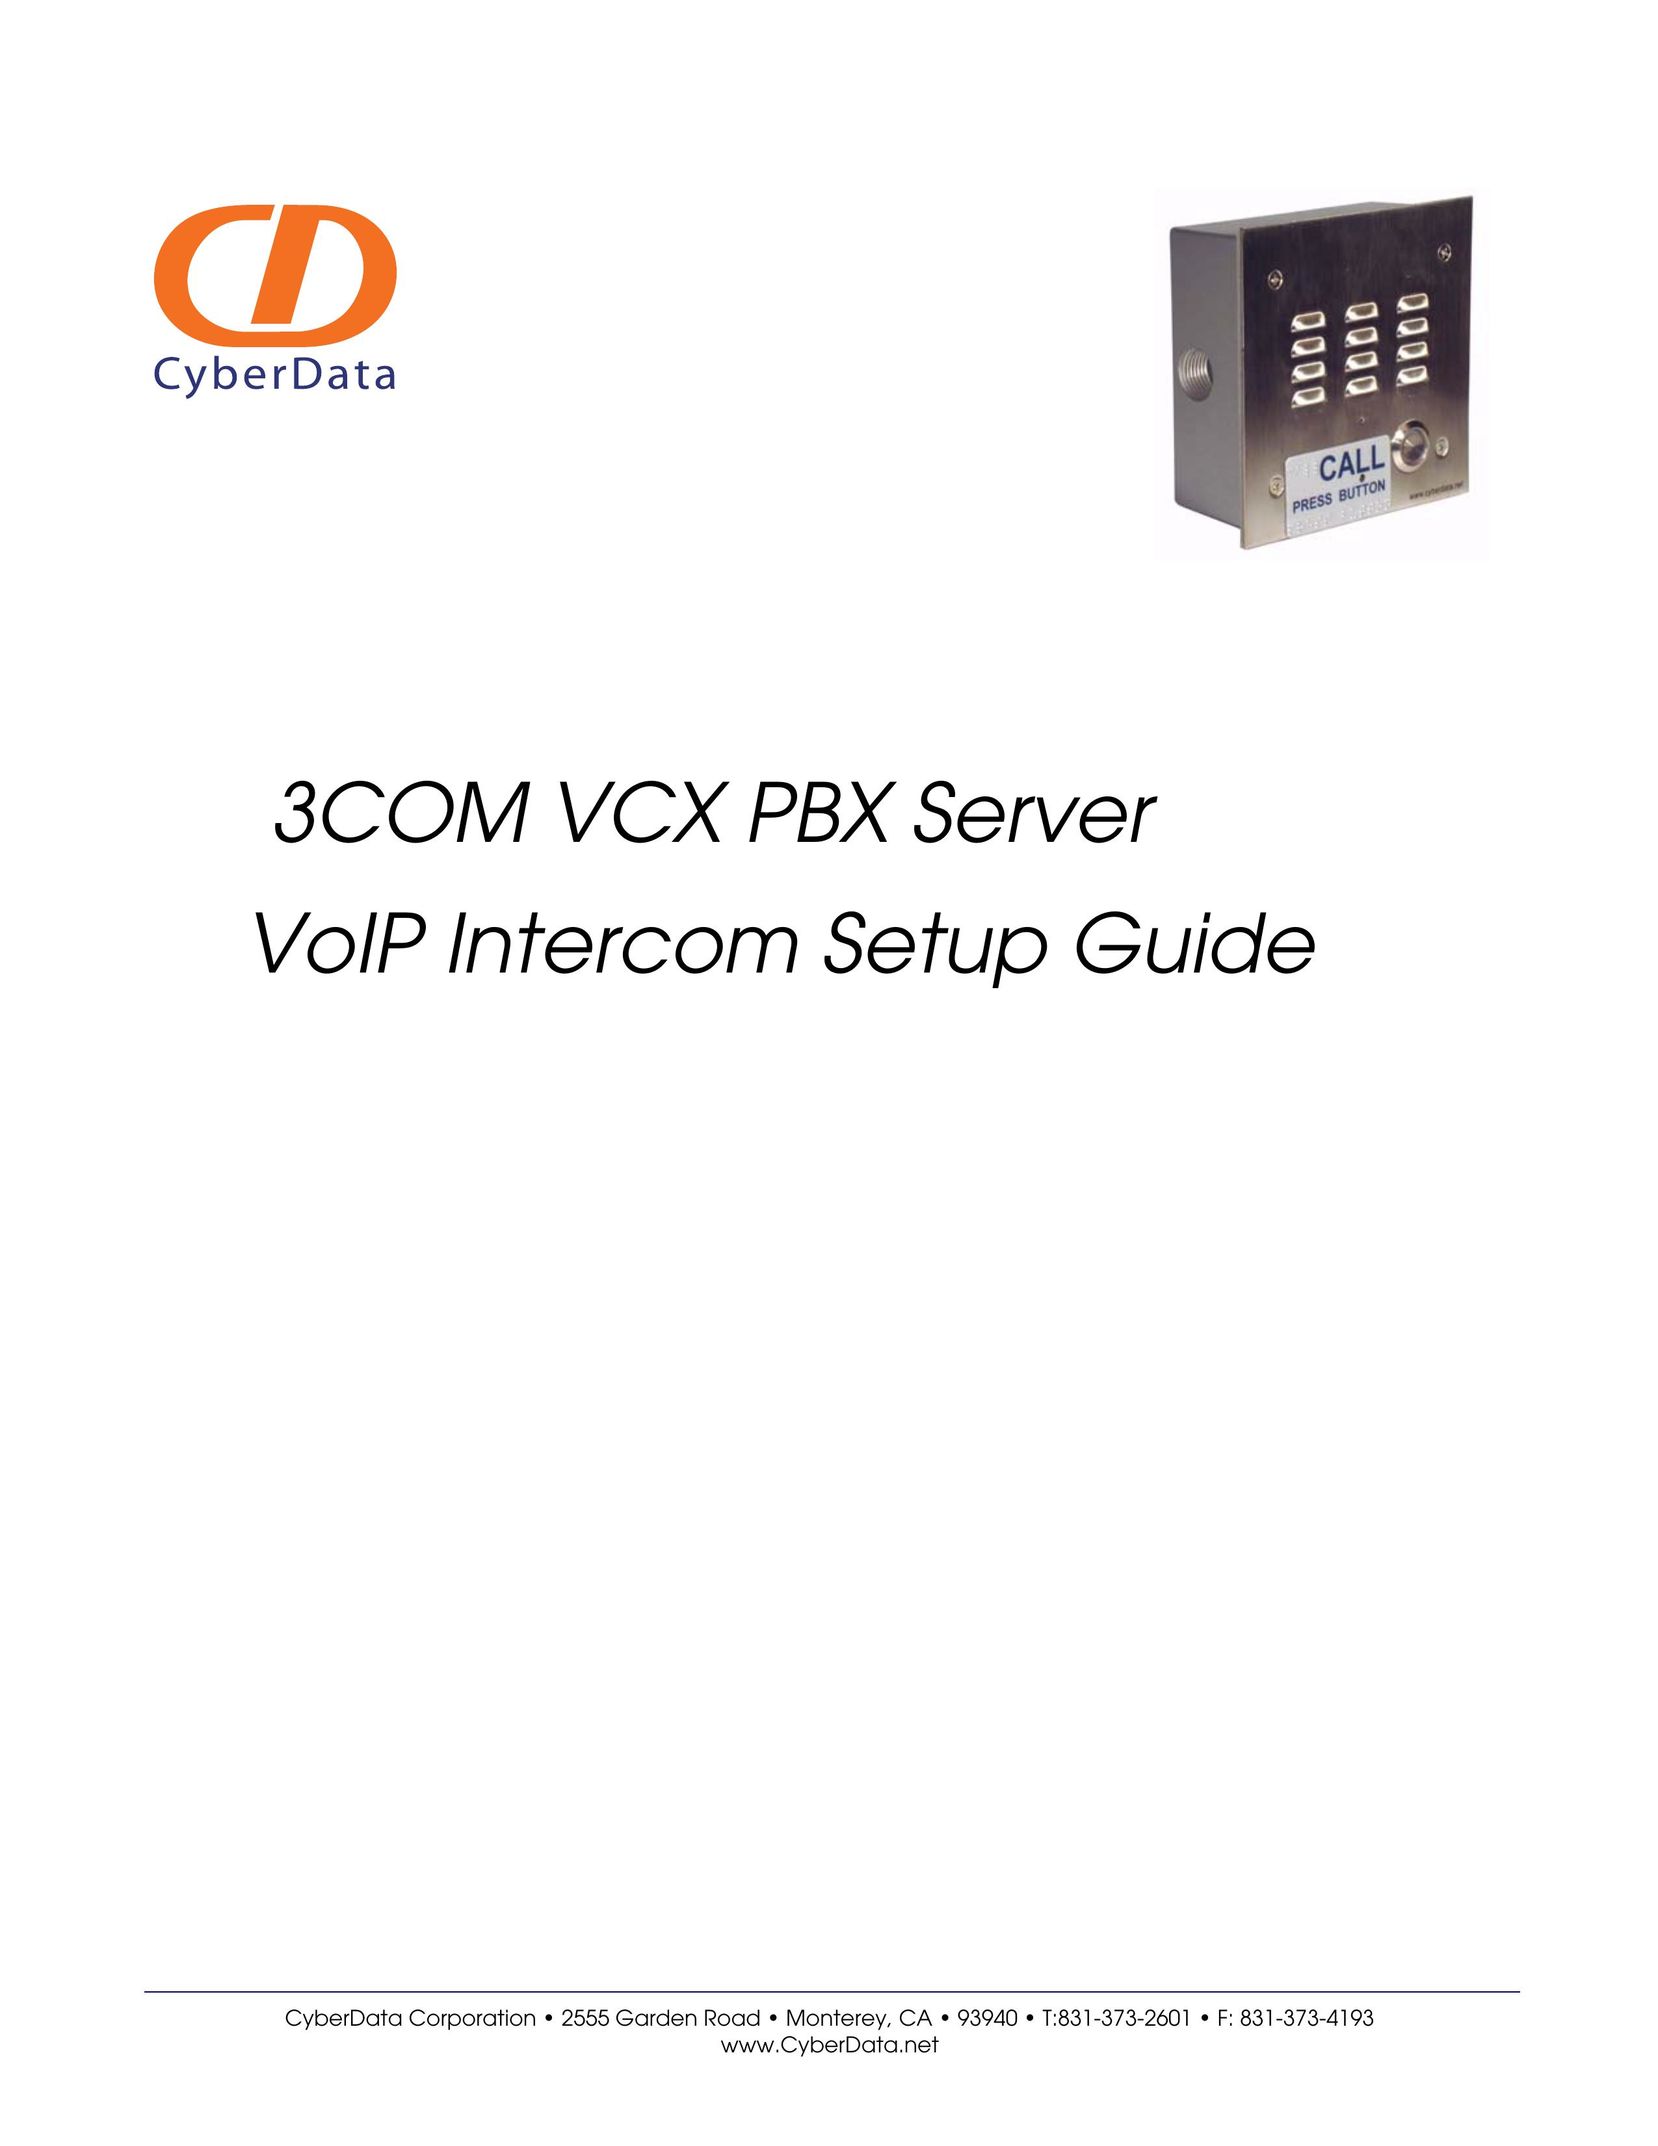 CyberData 3COM VCX PBX Intercom System User Manual